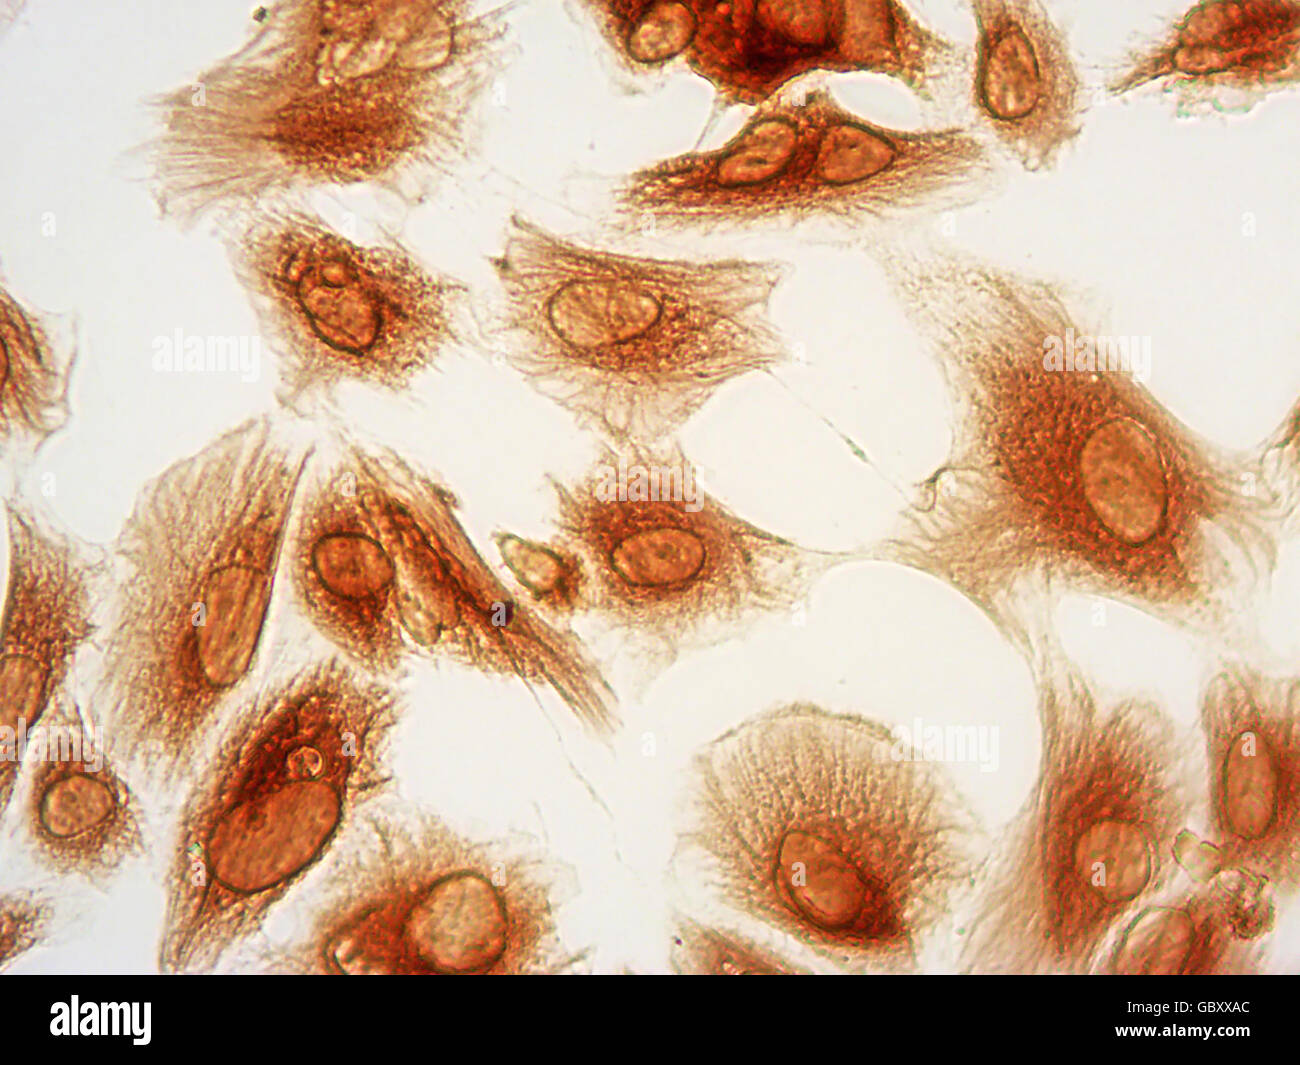 Photomicrographie de cellules stromales de l'endomètre humain tachées par immunocytochimie de protéine de la vimentine (marron), 40x. Banque D'Images